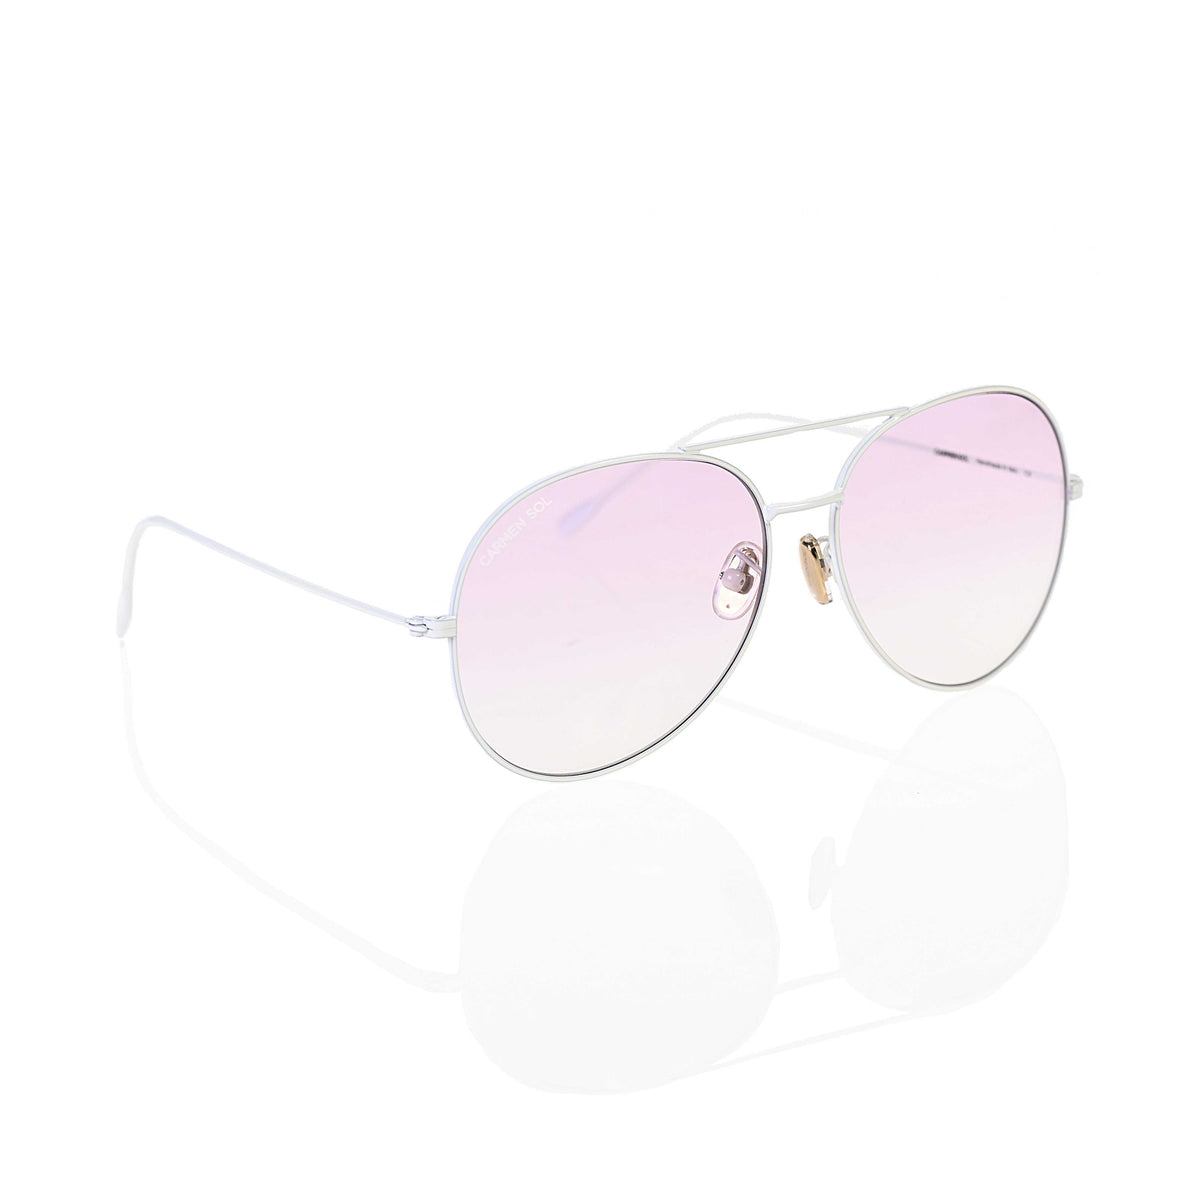 White Aviator sunglasses